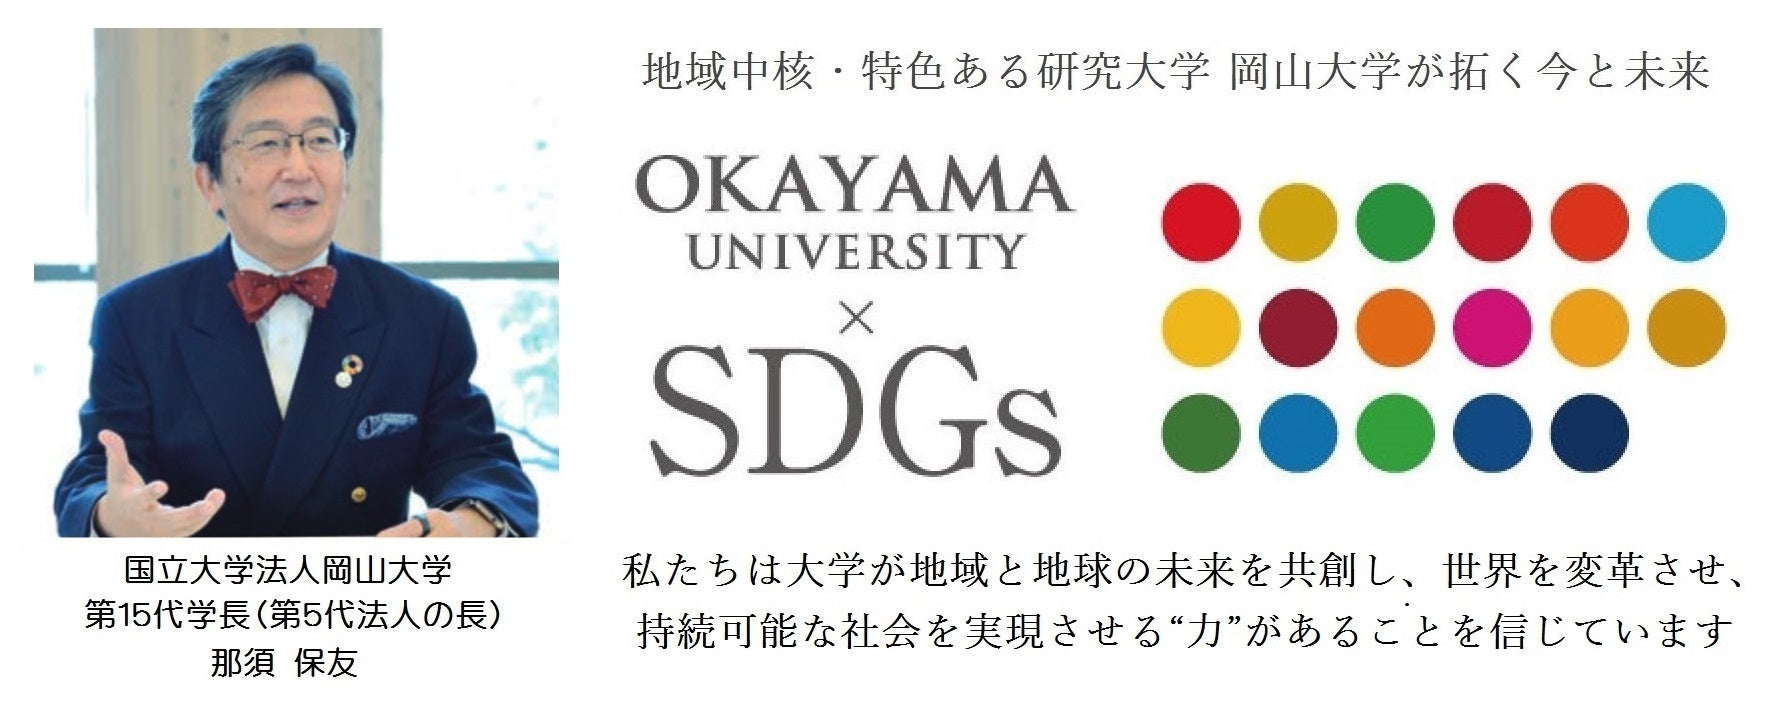 【岡山大学】岡山大学シンポジウム「チーム共用による技術職員組織構築の過去・現在・未来」を開催